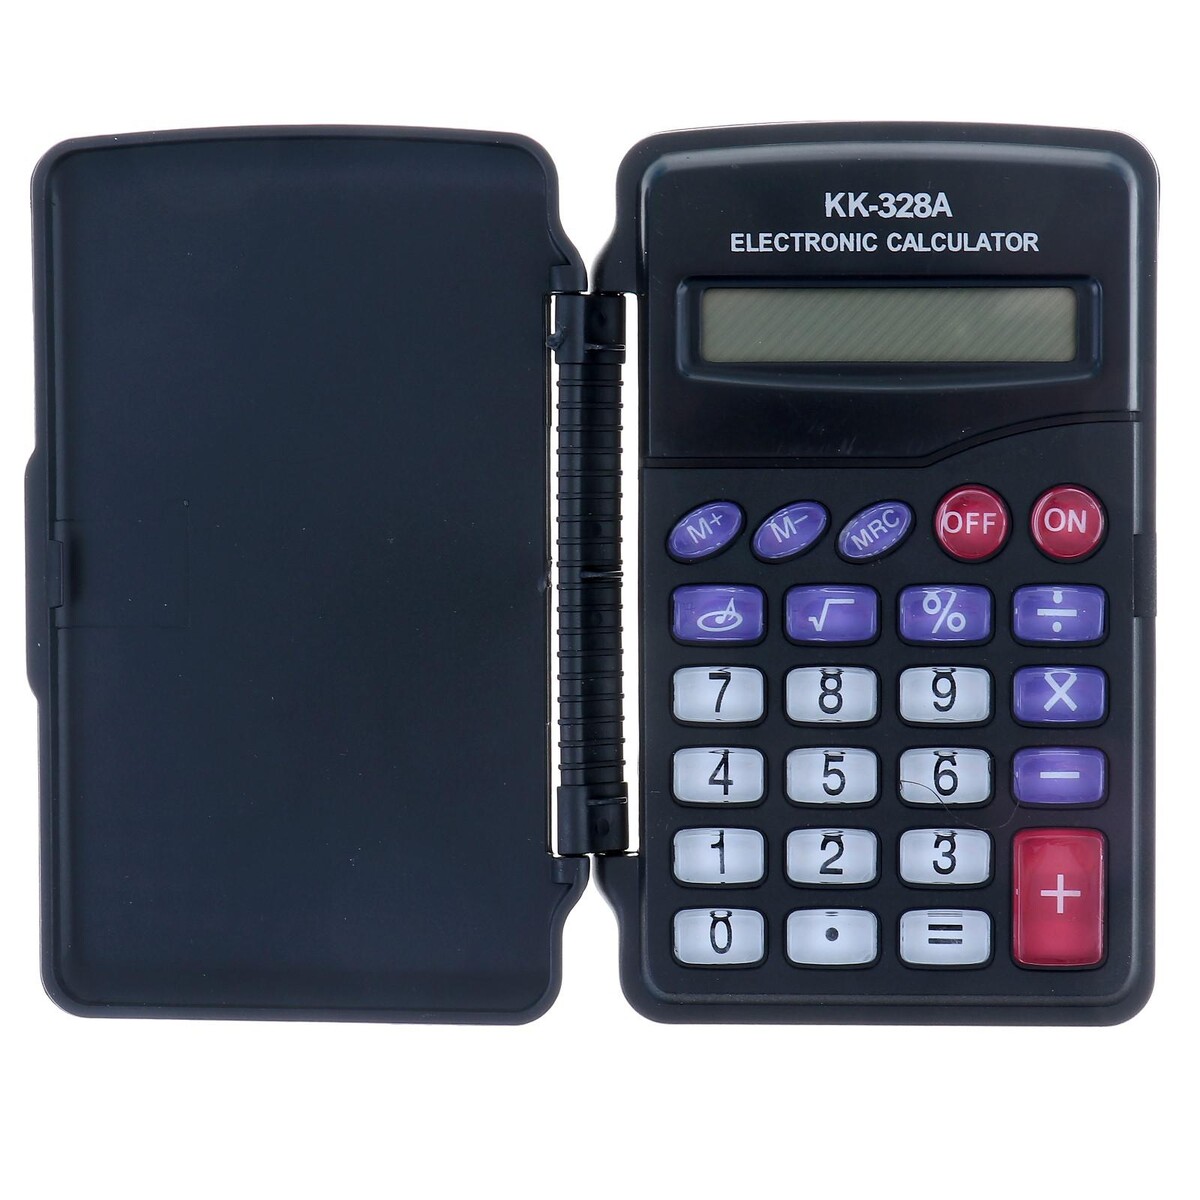 Калькулятор карманный, 8-разрядный, kk-328, с мелодией калькулятор карманный с чехлом 8 разрядный kc 888 работает от батарейки таблетка ag 10